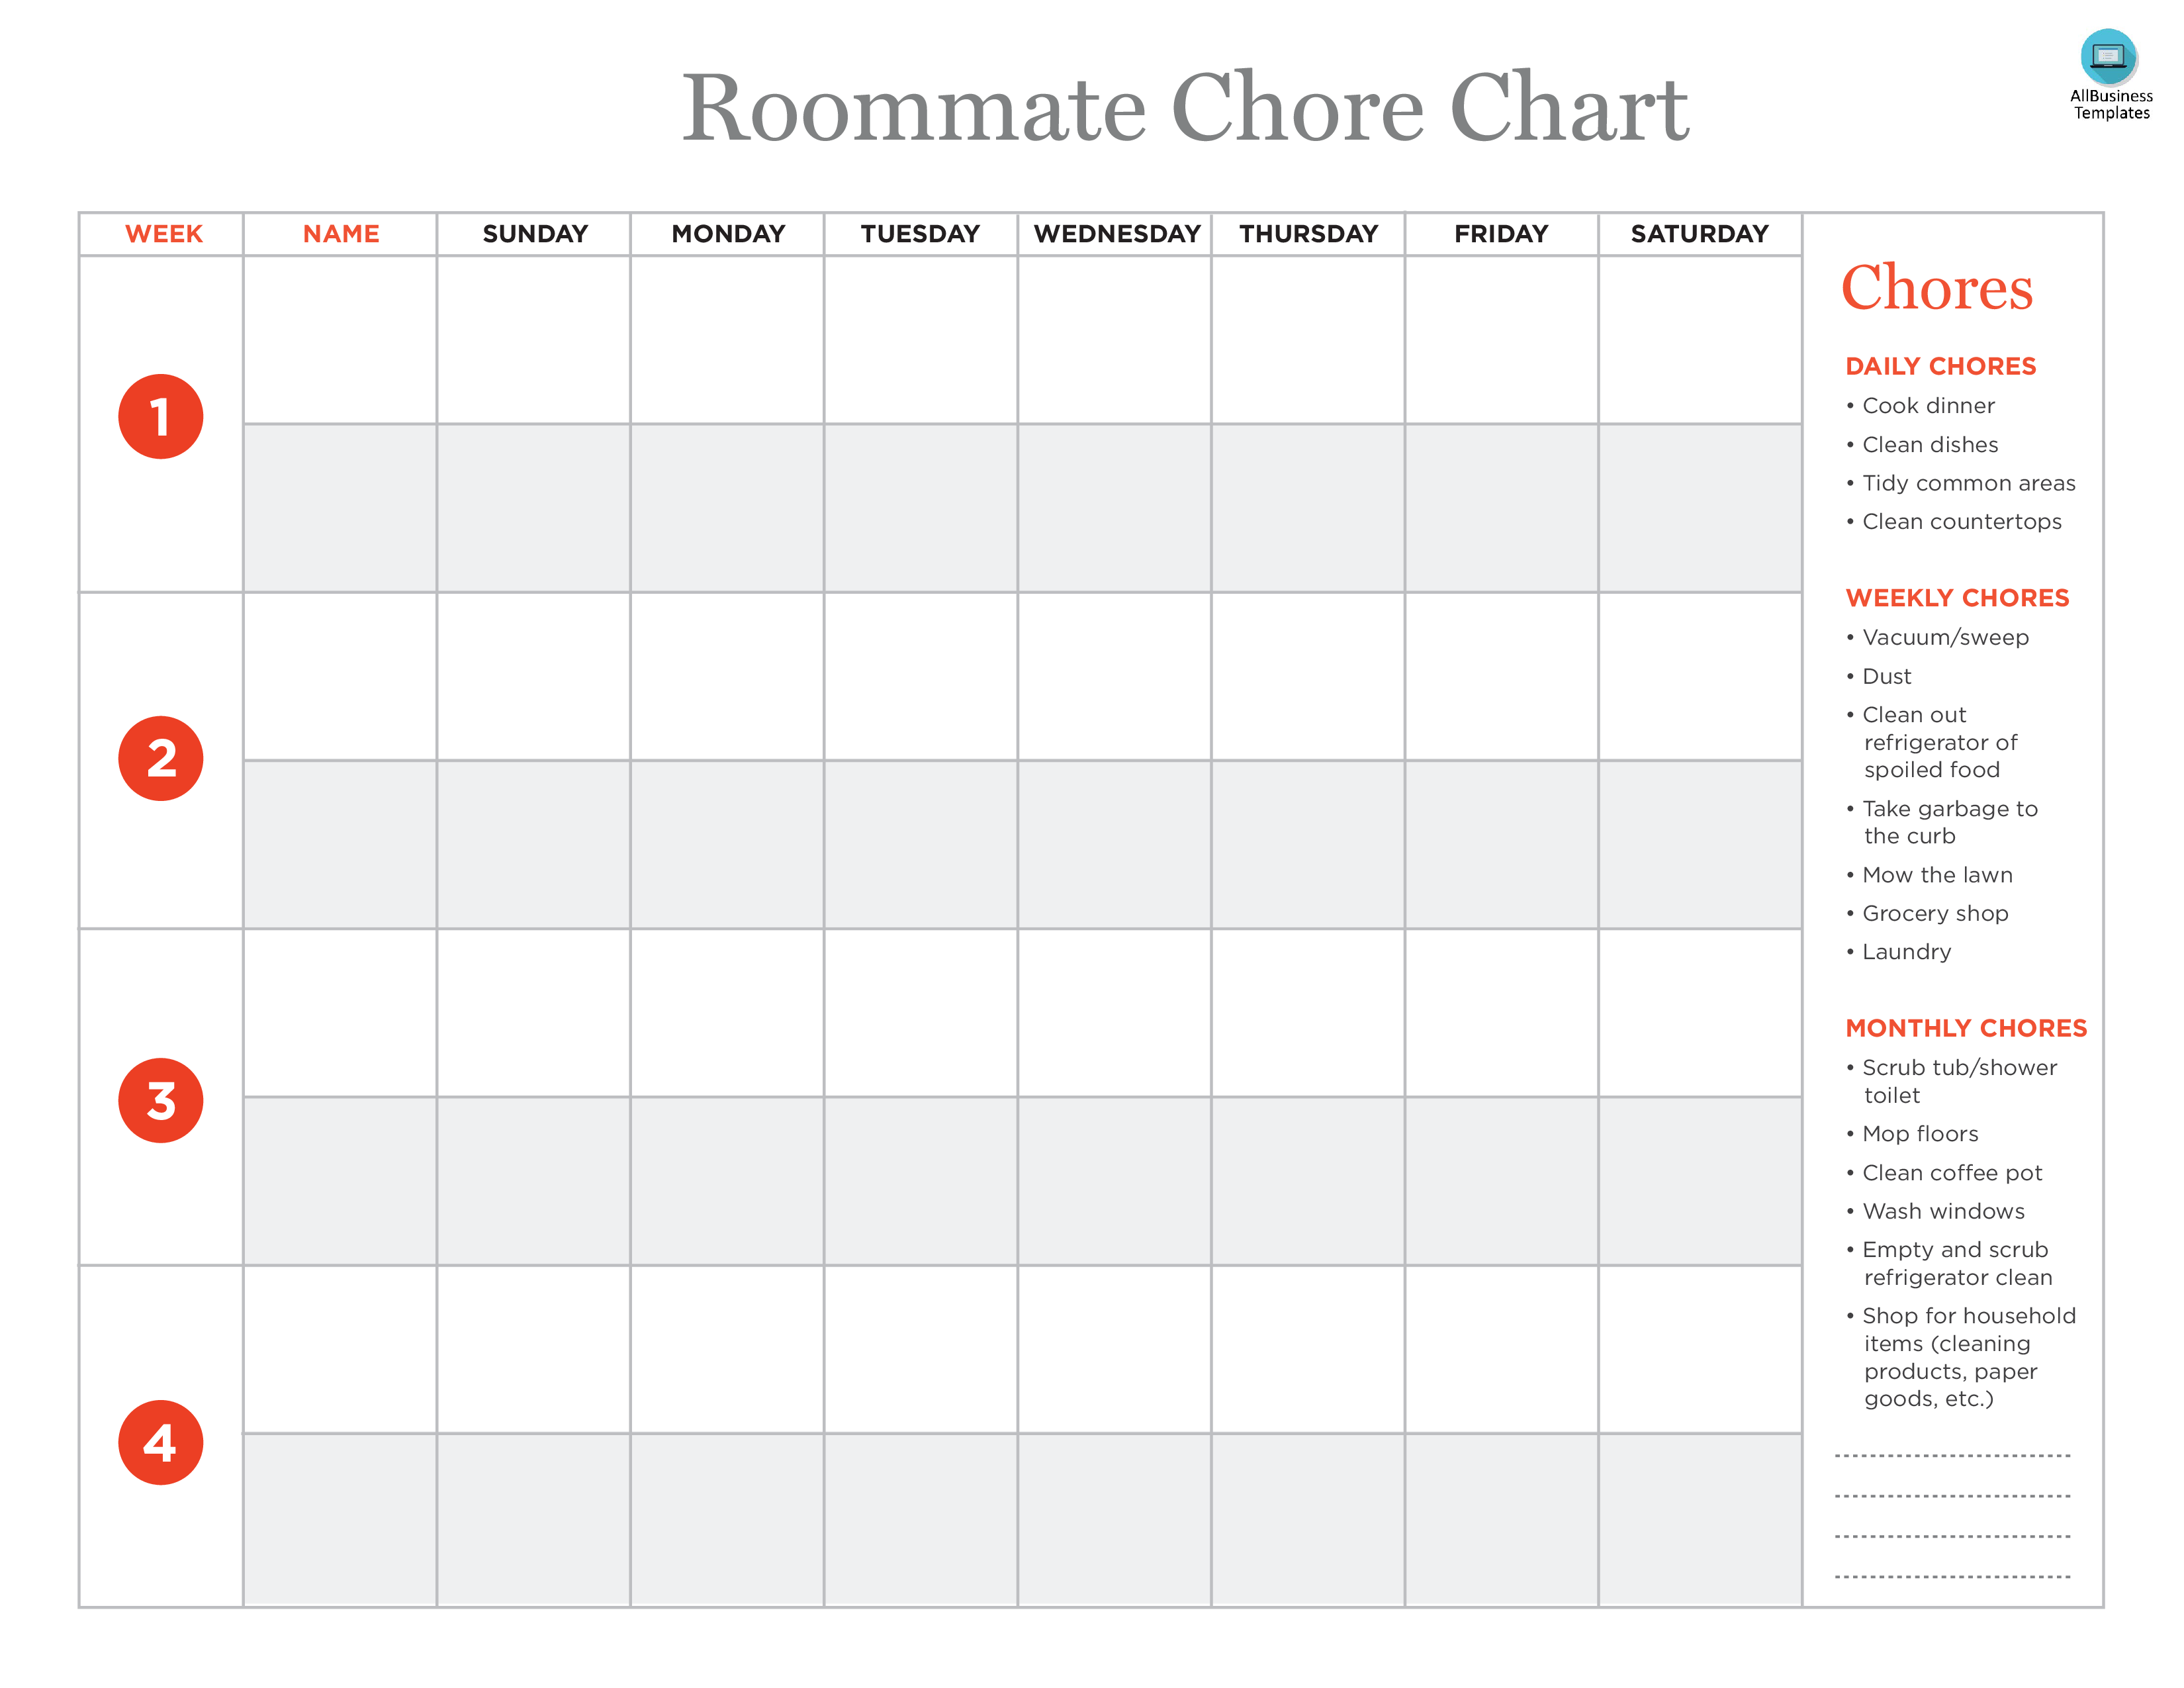 Roommate Chore Chart main image